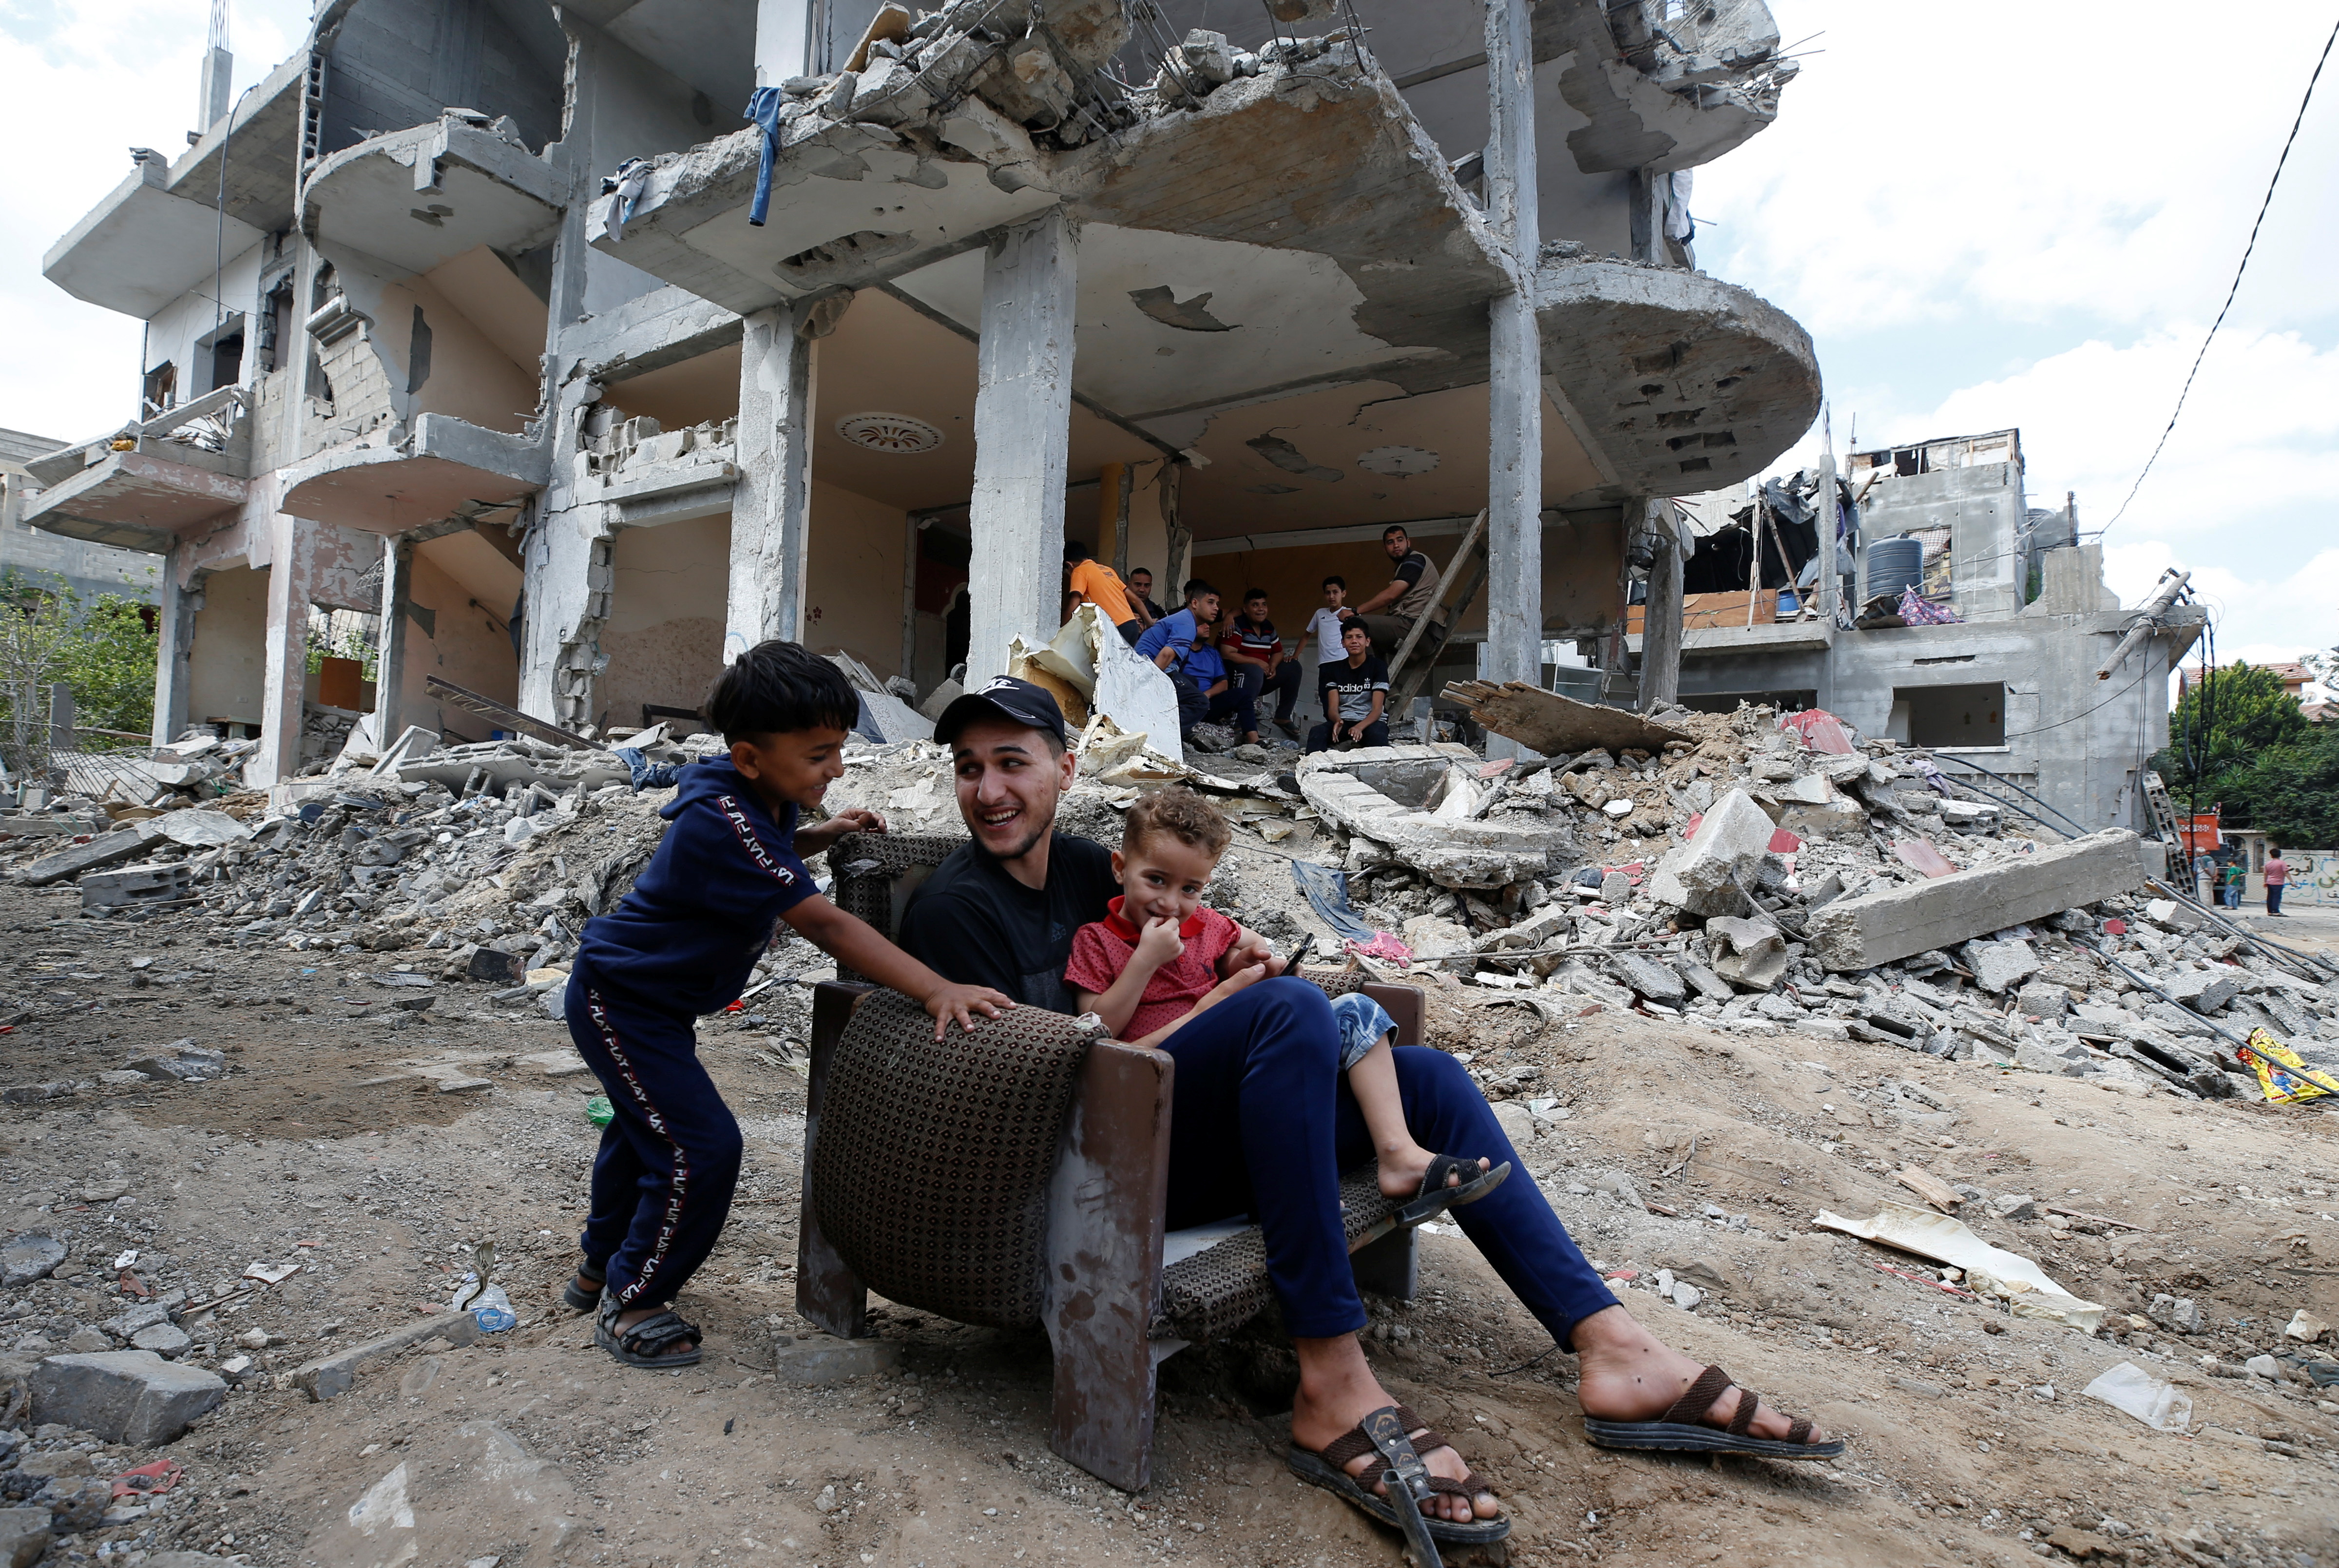 Палестинците седят на стола сред развалините на сграда, която е била повредена при израелските въздушни удари по време на сраженията между Израел и Хамас в Газа на 23 май 2021 г. REUTERS / Мохамед Салем